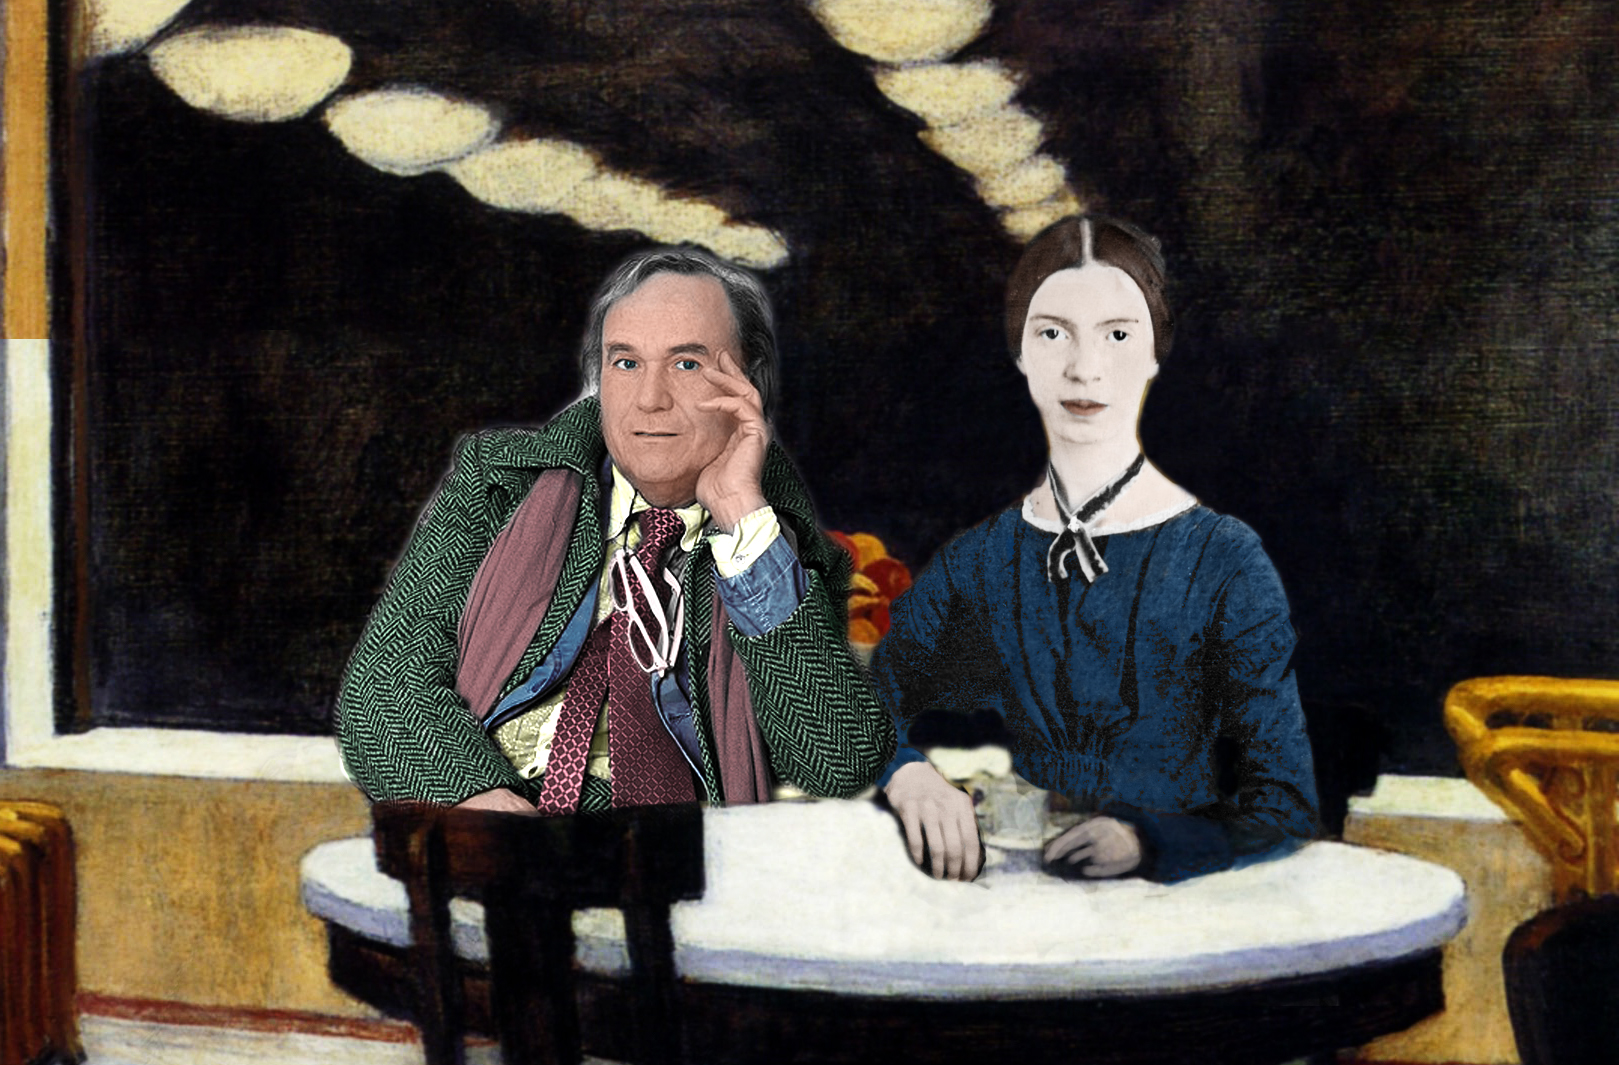 “Per lei la natura è una casa popolata di spettri”: Silvio Raffo racconta “La bella di Amherst”, l’opera teatrale di William Luce sulla vita di Emily Dickinson